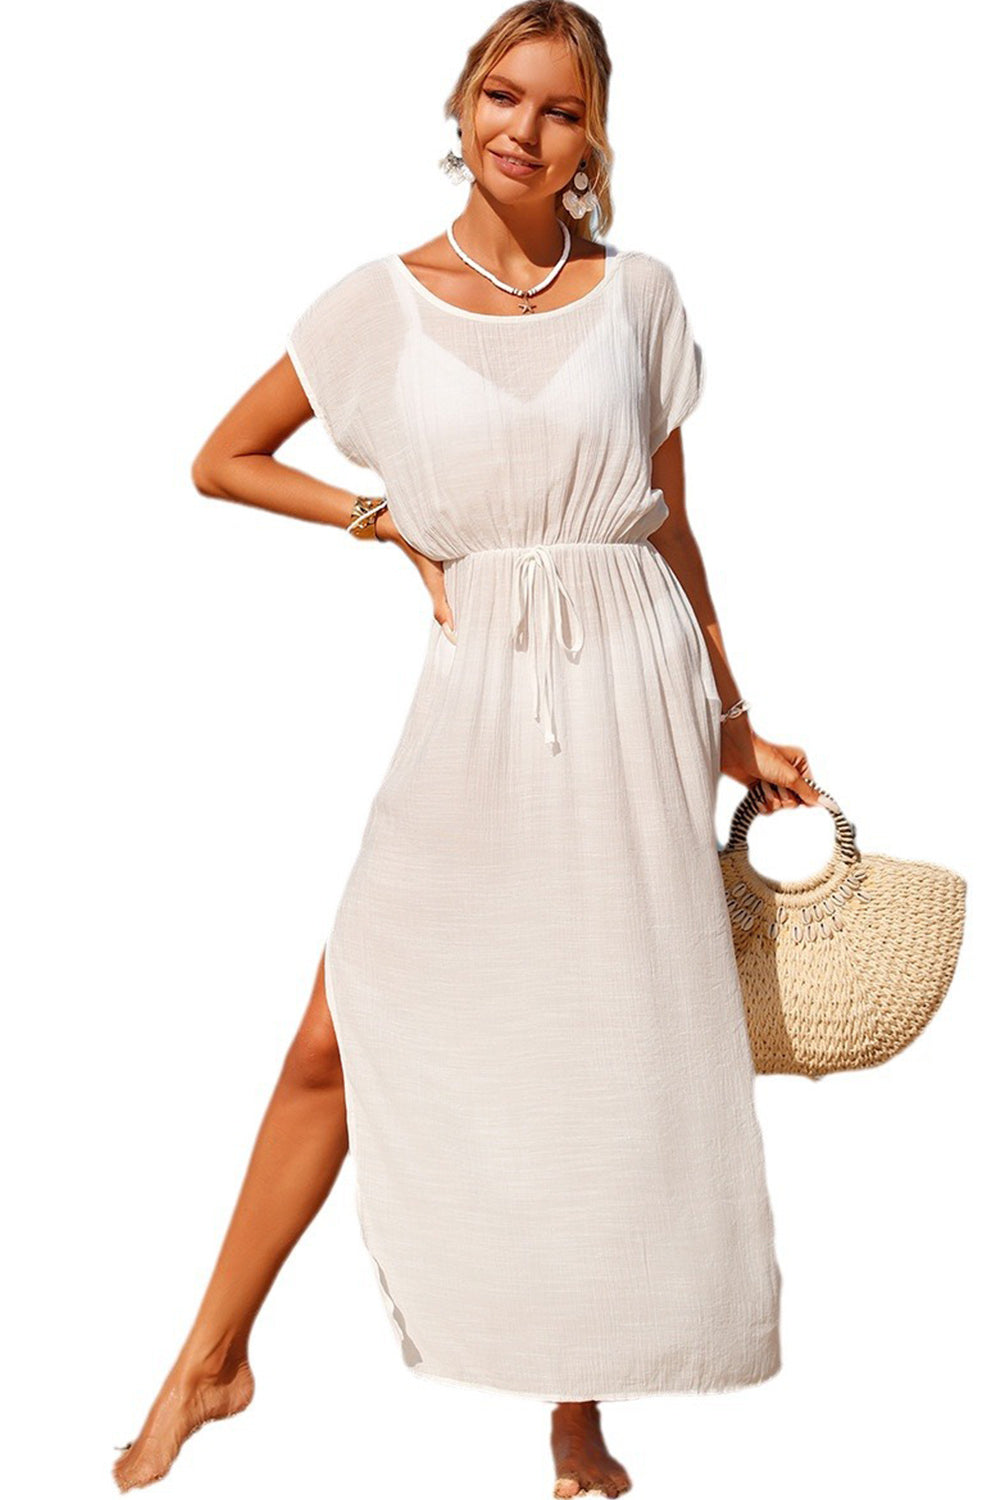 Weißes, fließendes Strandkleid mit seitlichem Schlitz und Kordelzug